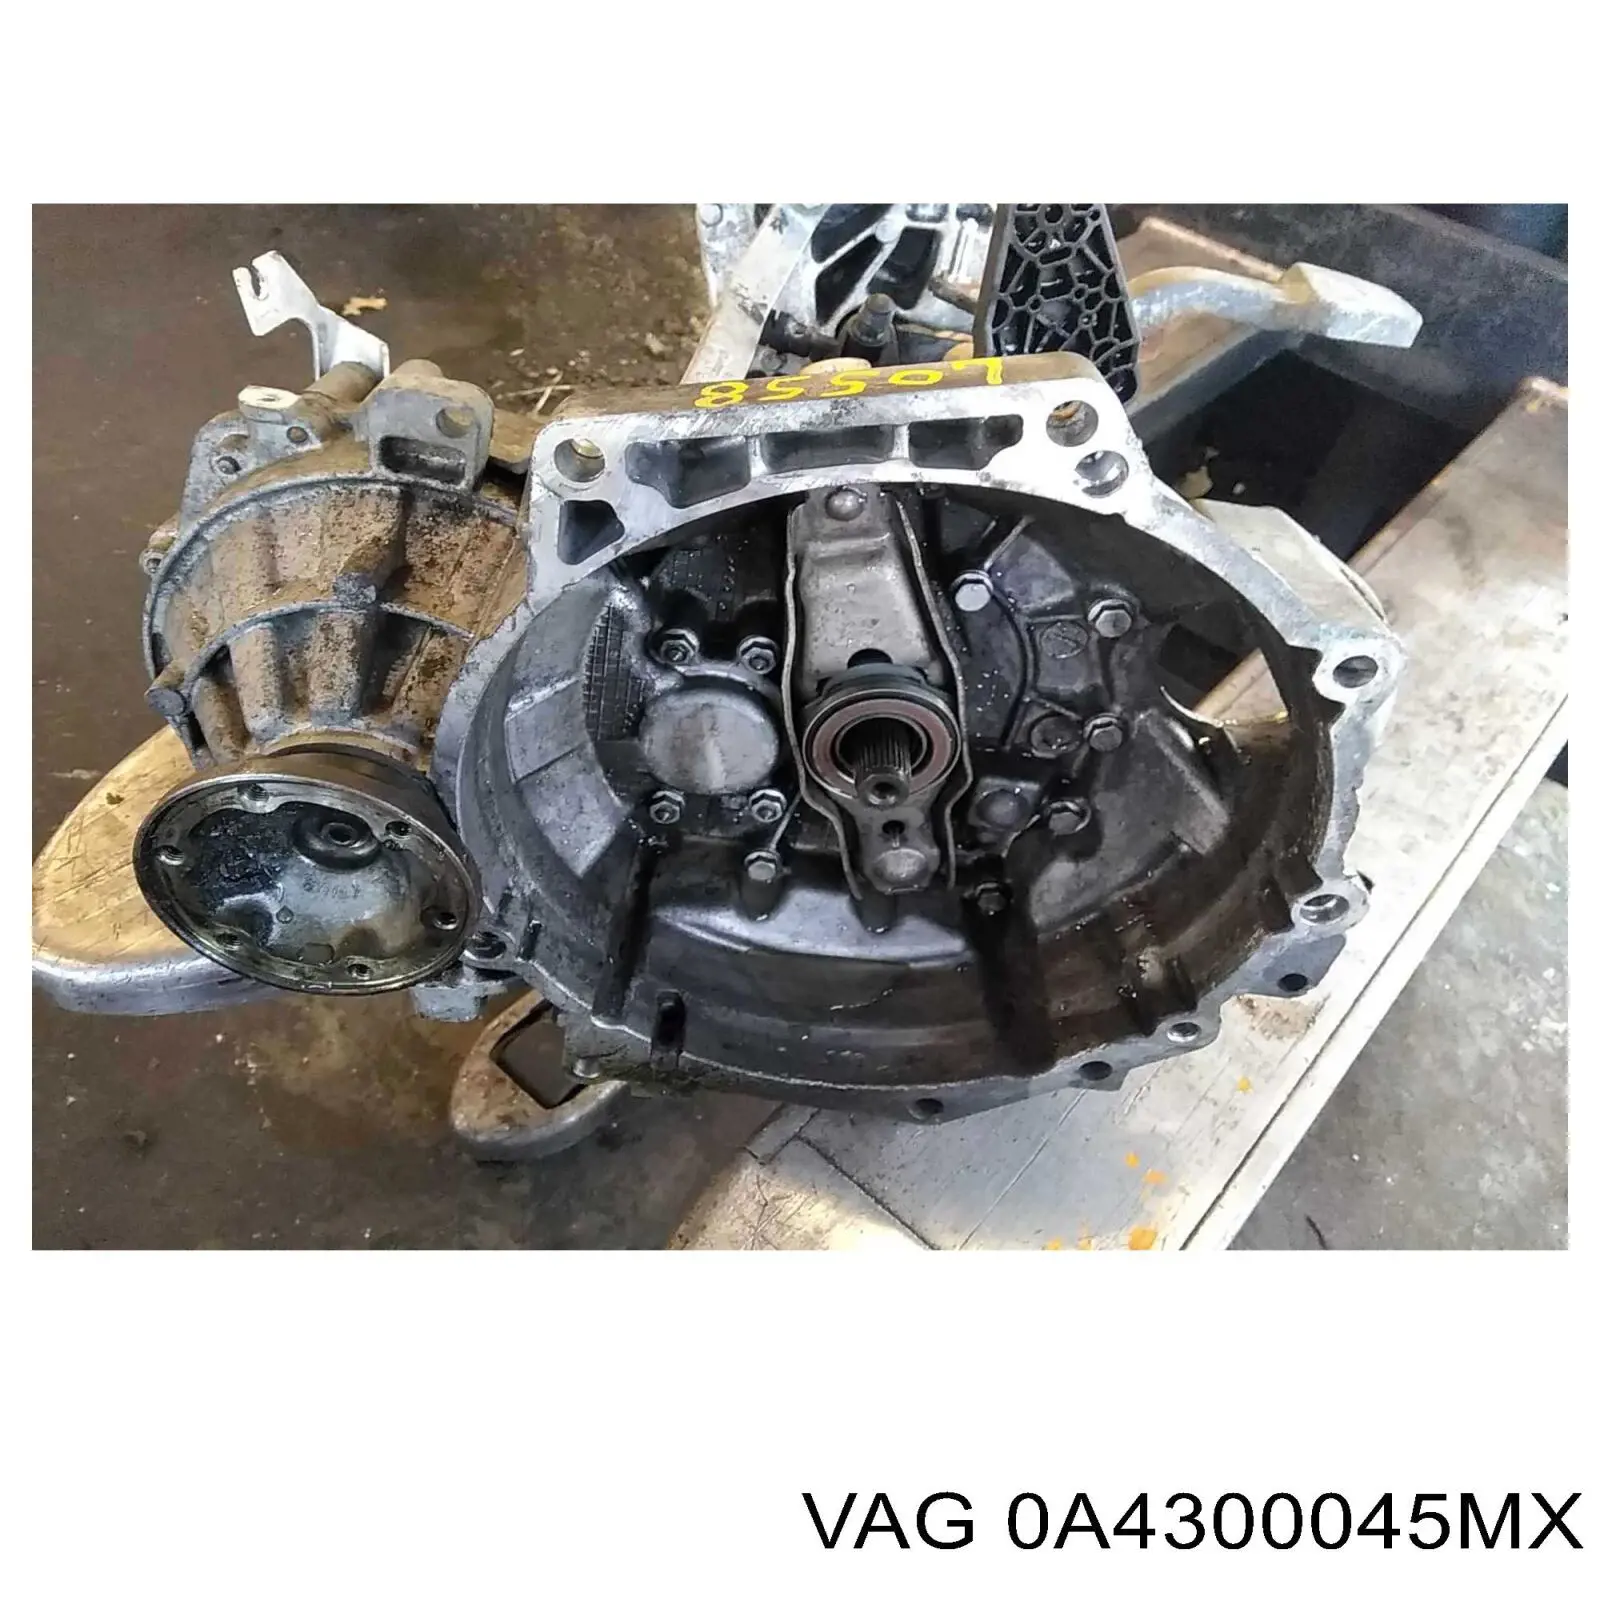 0A4300045MV VAG caixa de mudança montada (caixa mecânica de velocidades)